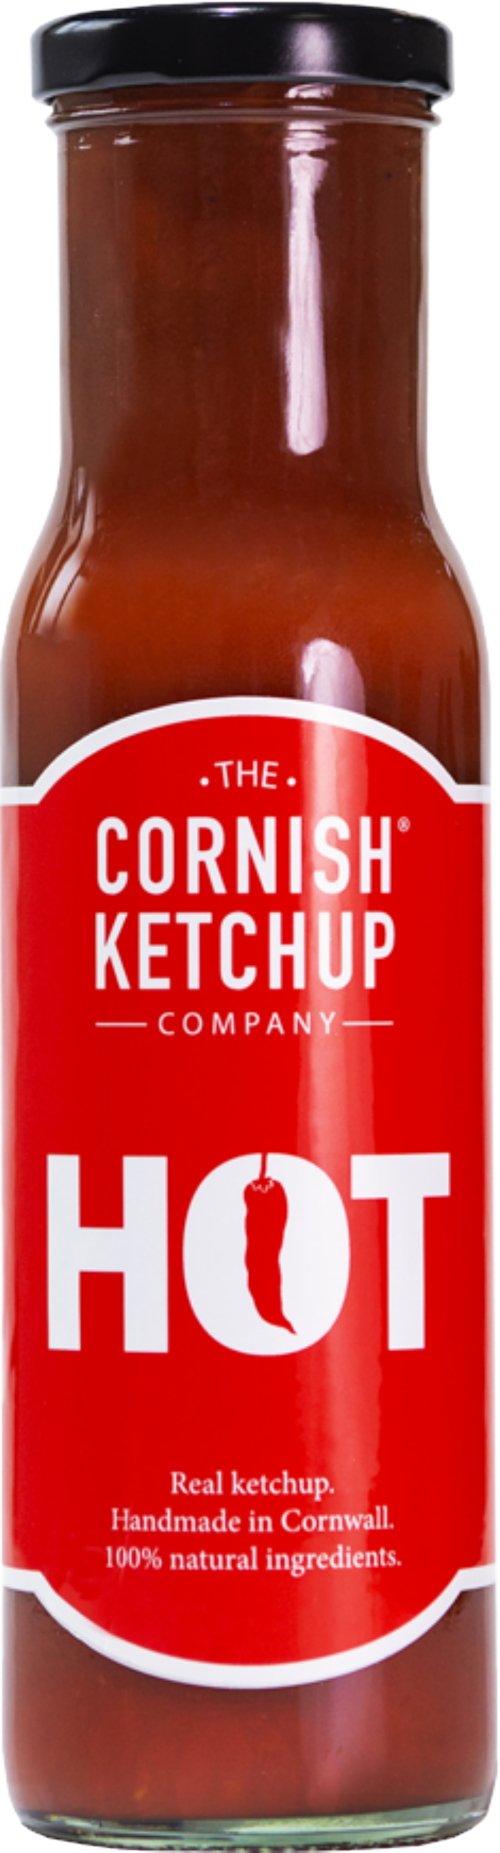 THE CORNISH KETCHUP CO. Hot Ketchup 255g